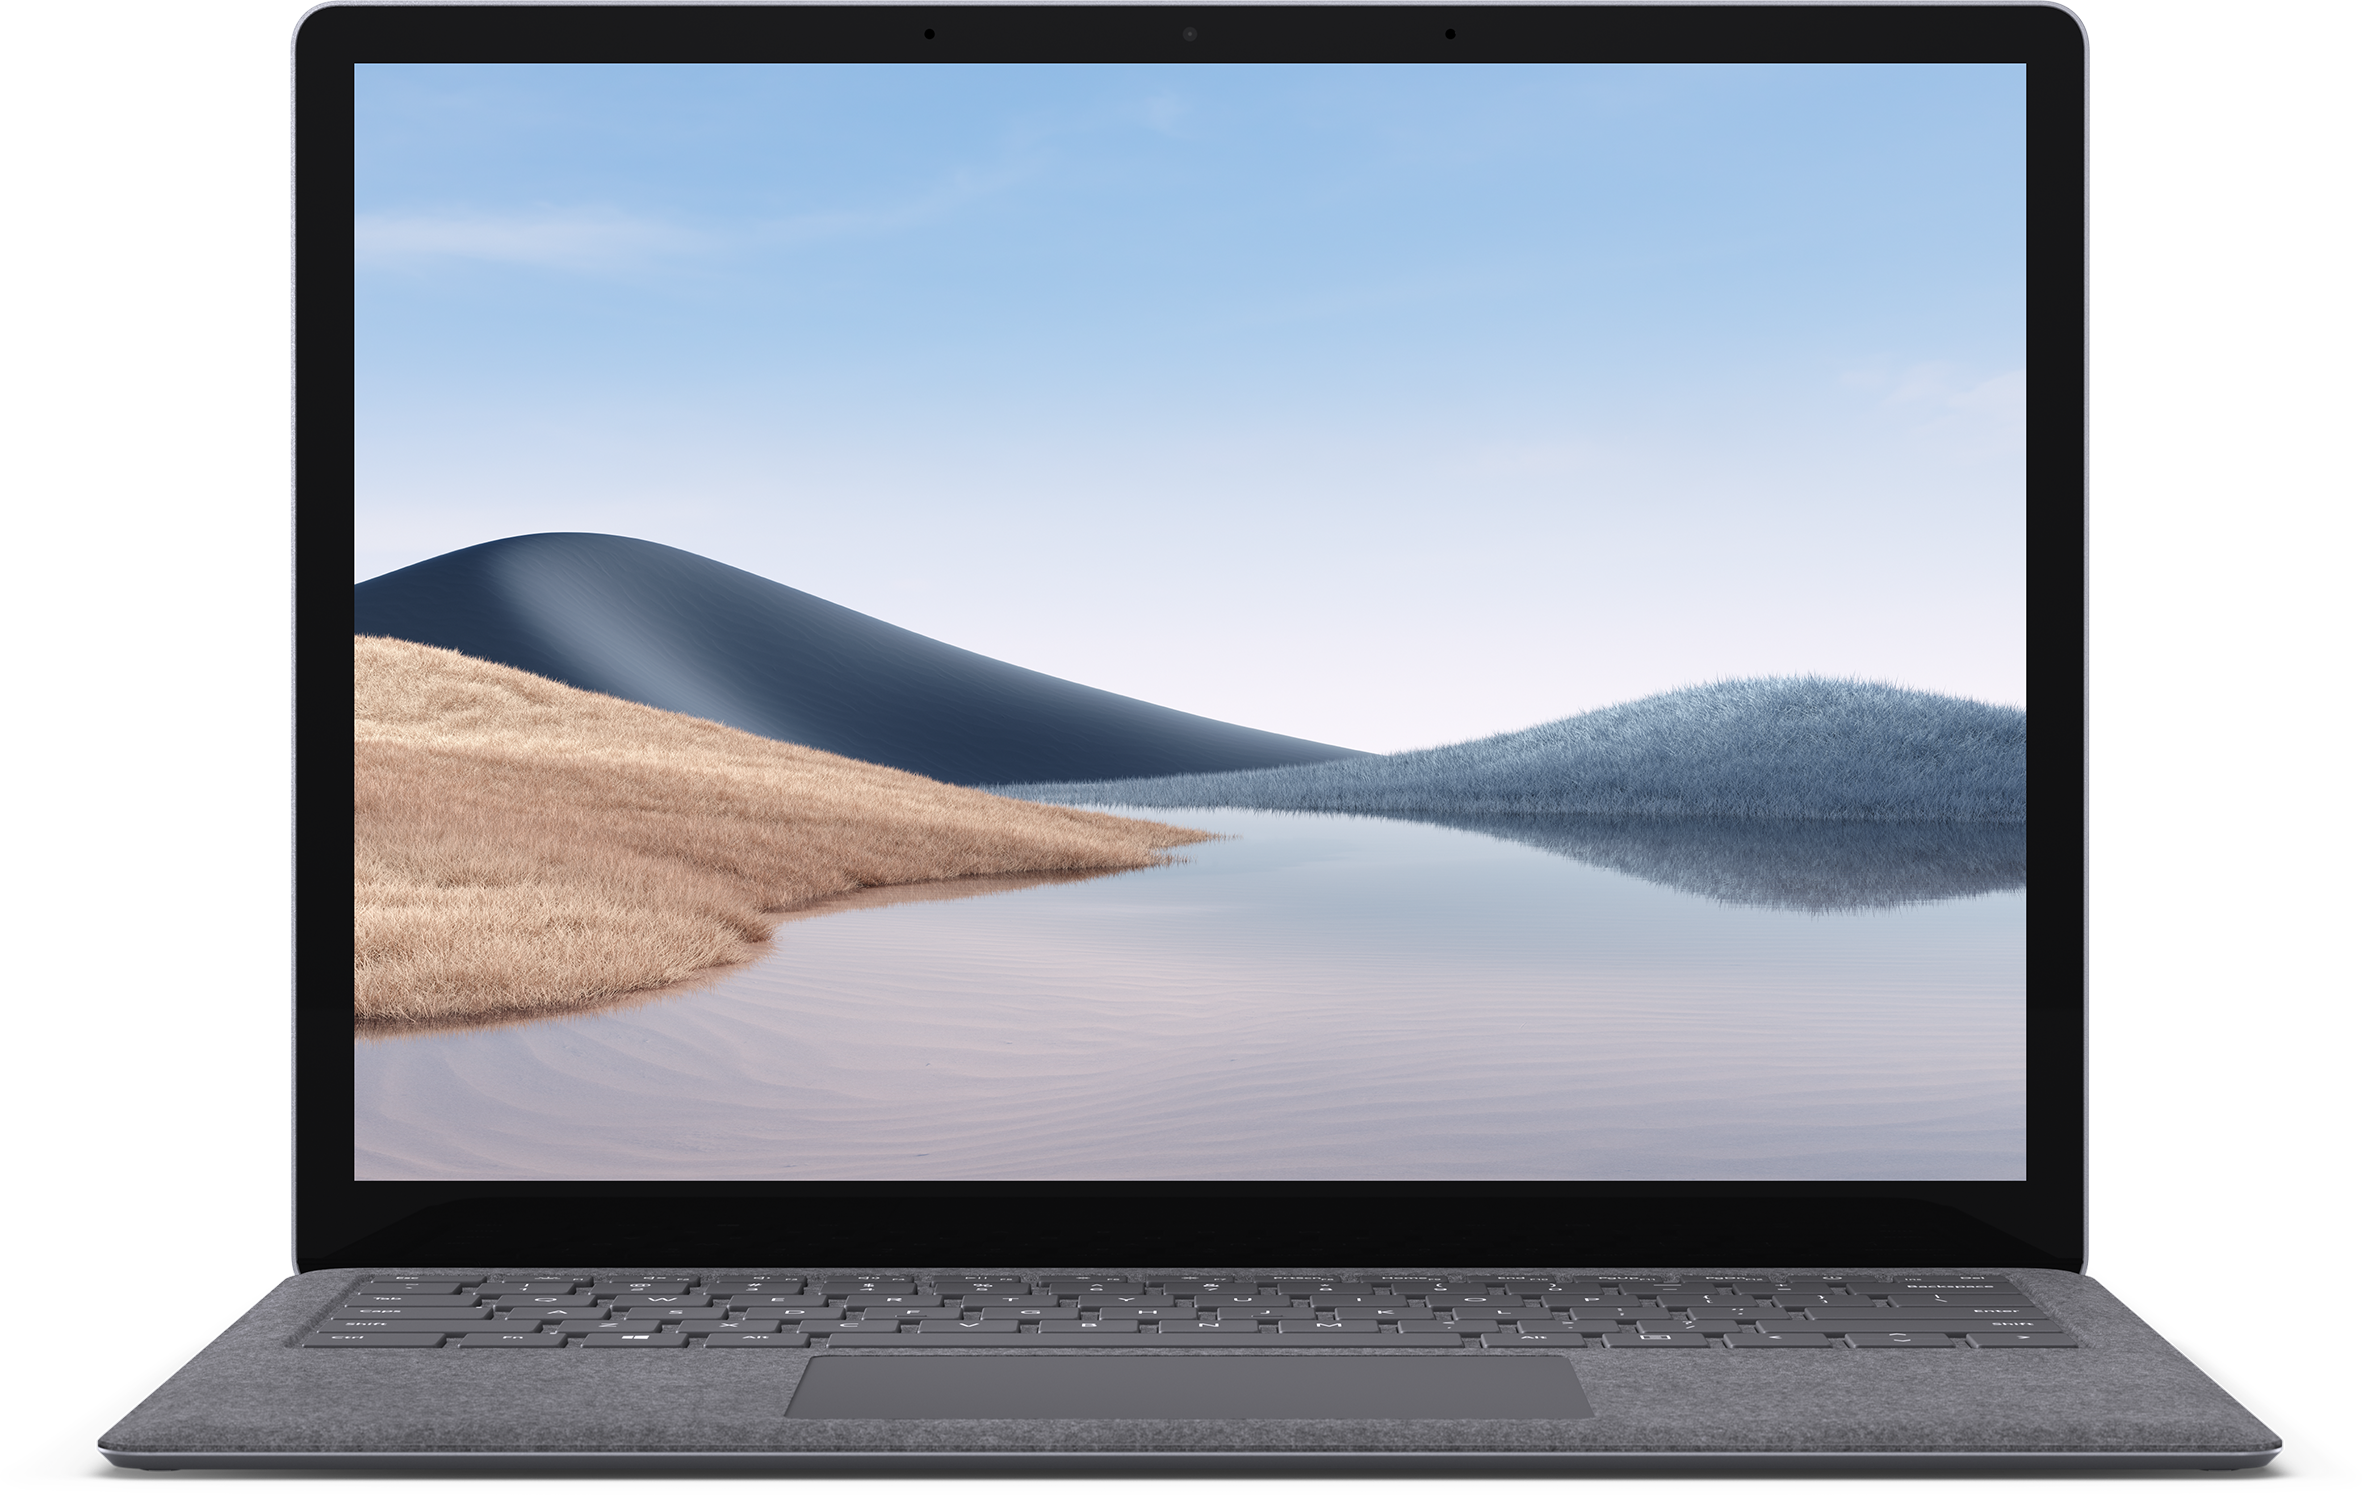 Pogo stick sprong Ontwikkelen Ontvangst Surface Laptop 4: Ultradunne laptop met touchscreen - Microsoft Surface